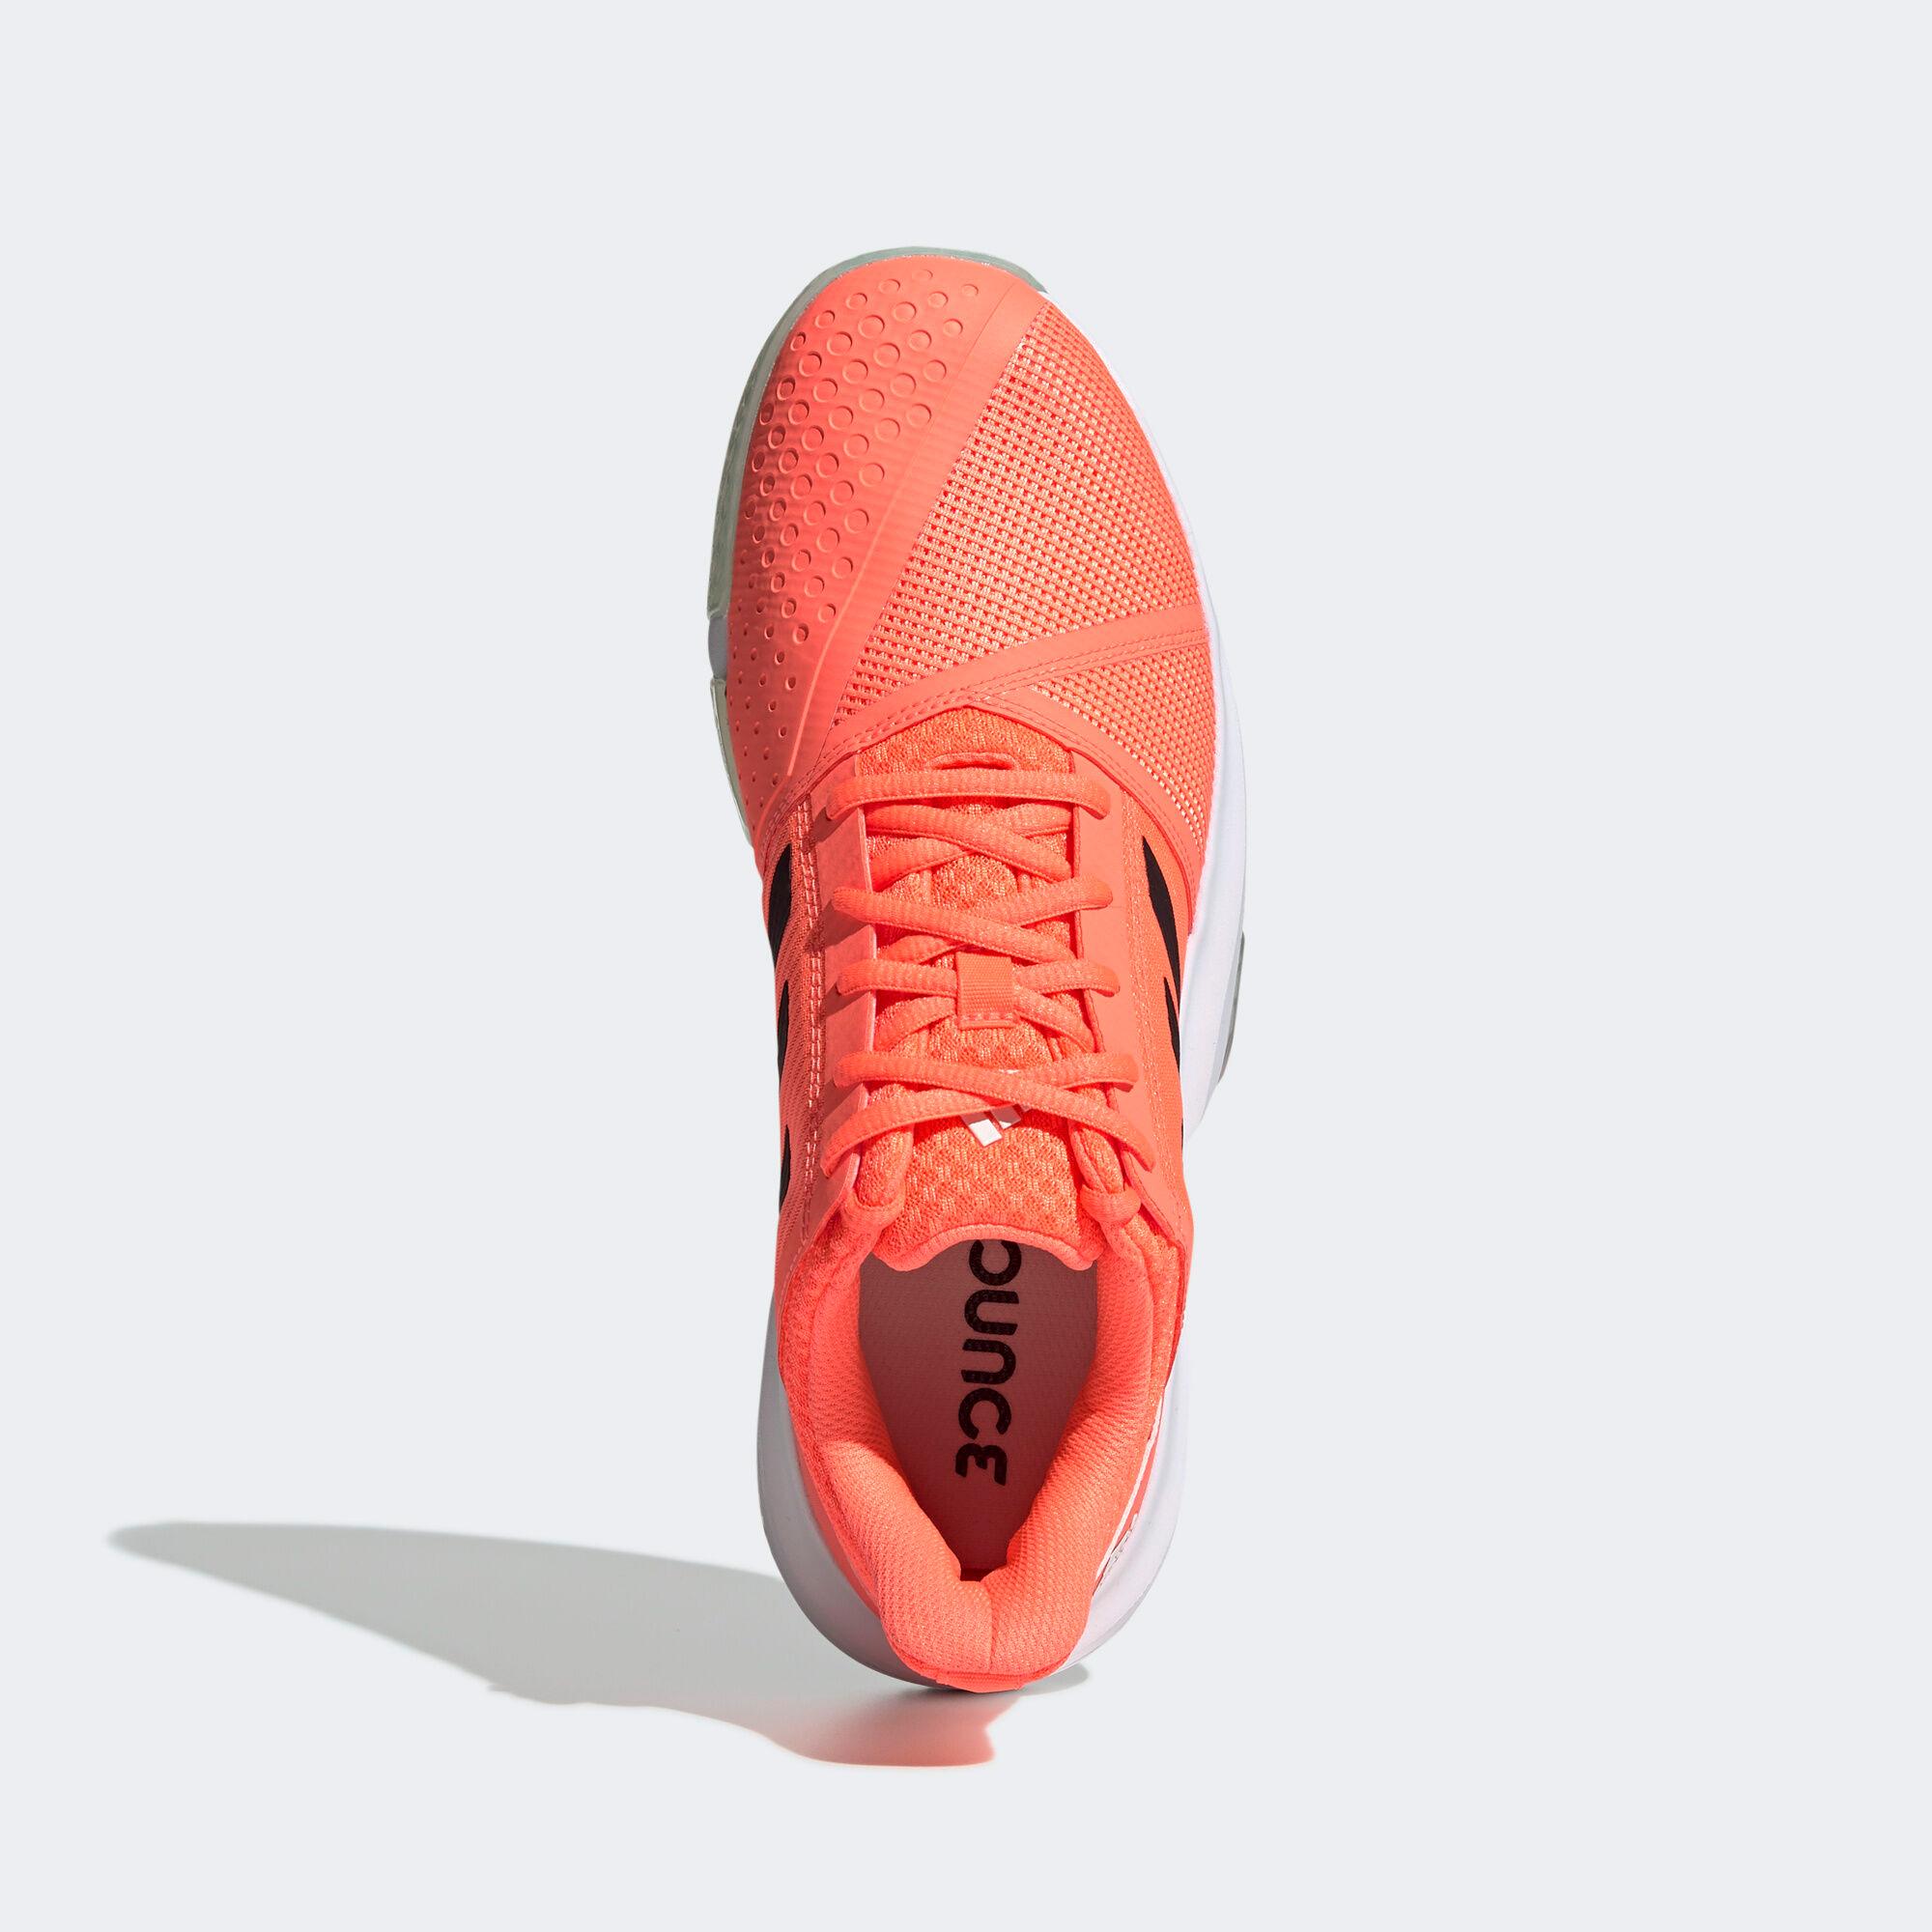 Adidas Mens CourtJam Bounce Tennis Shoes - Orange - Tennisnuts.com